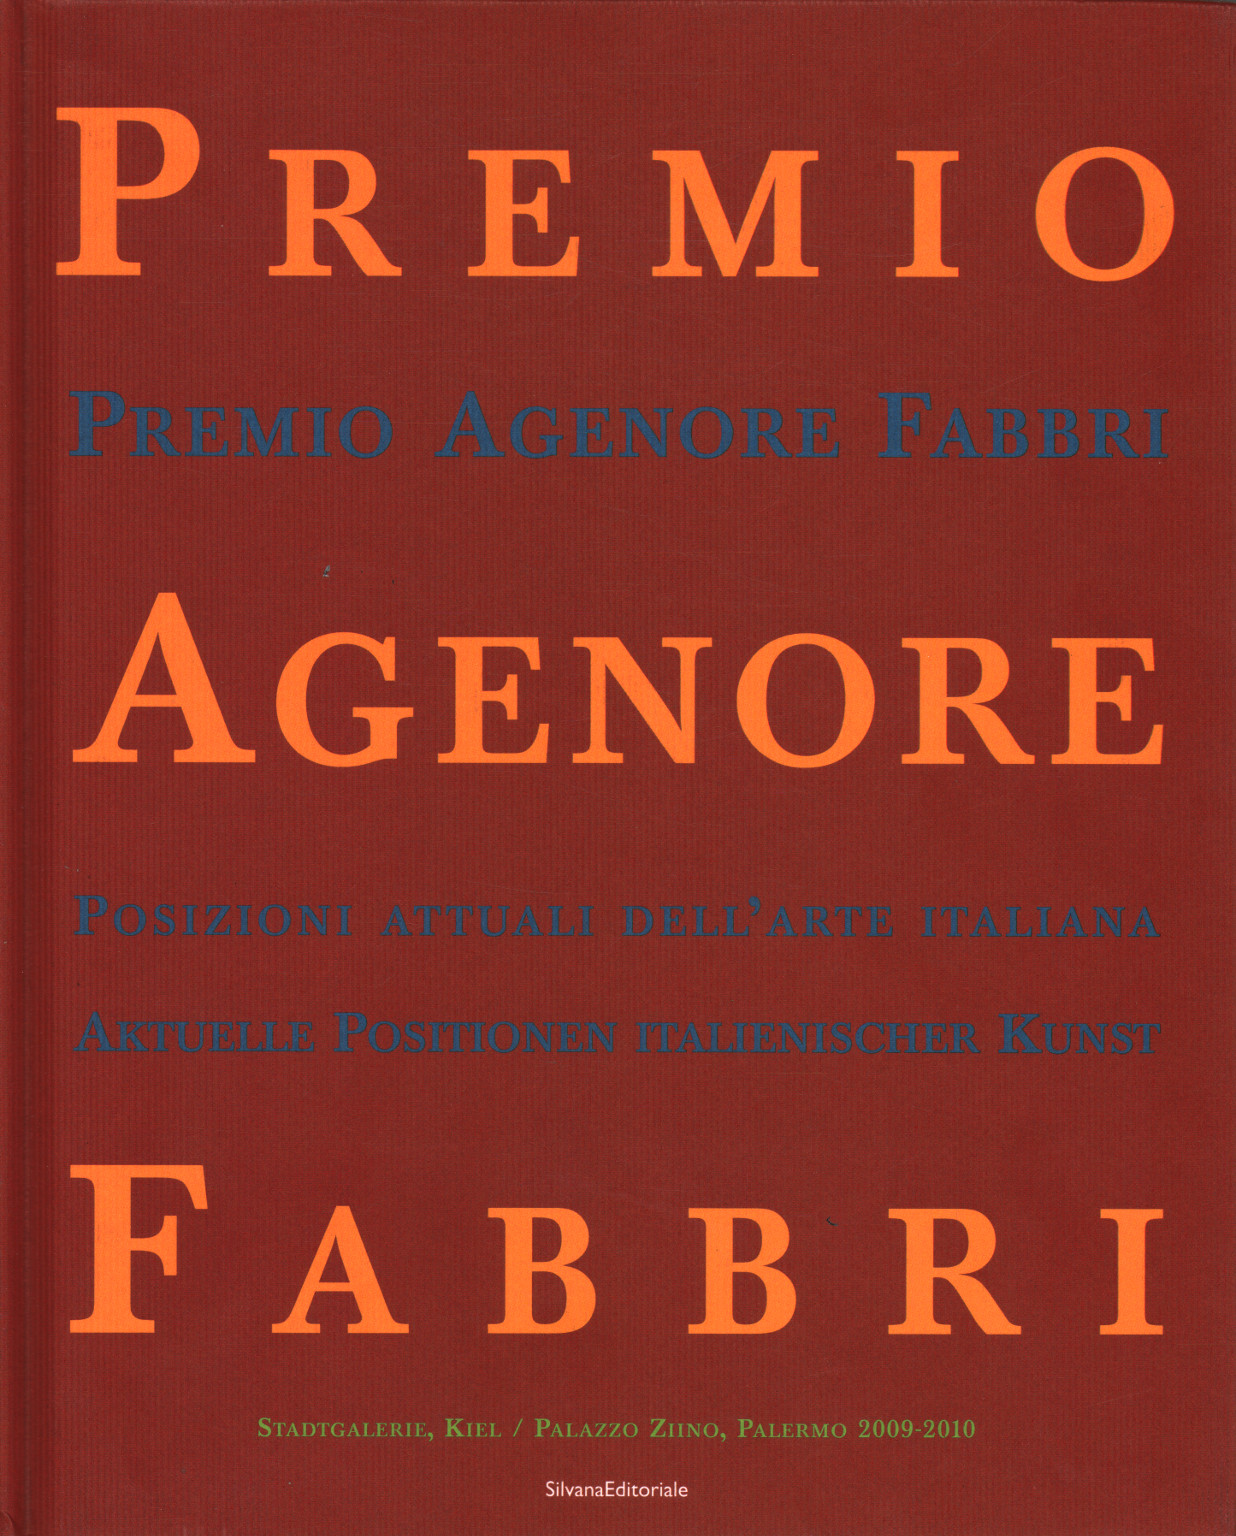 Premio Agenore Fabbri IV, s.un.